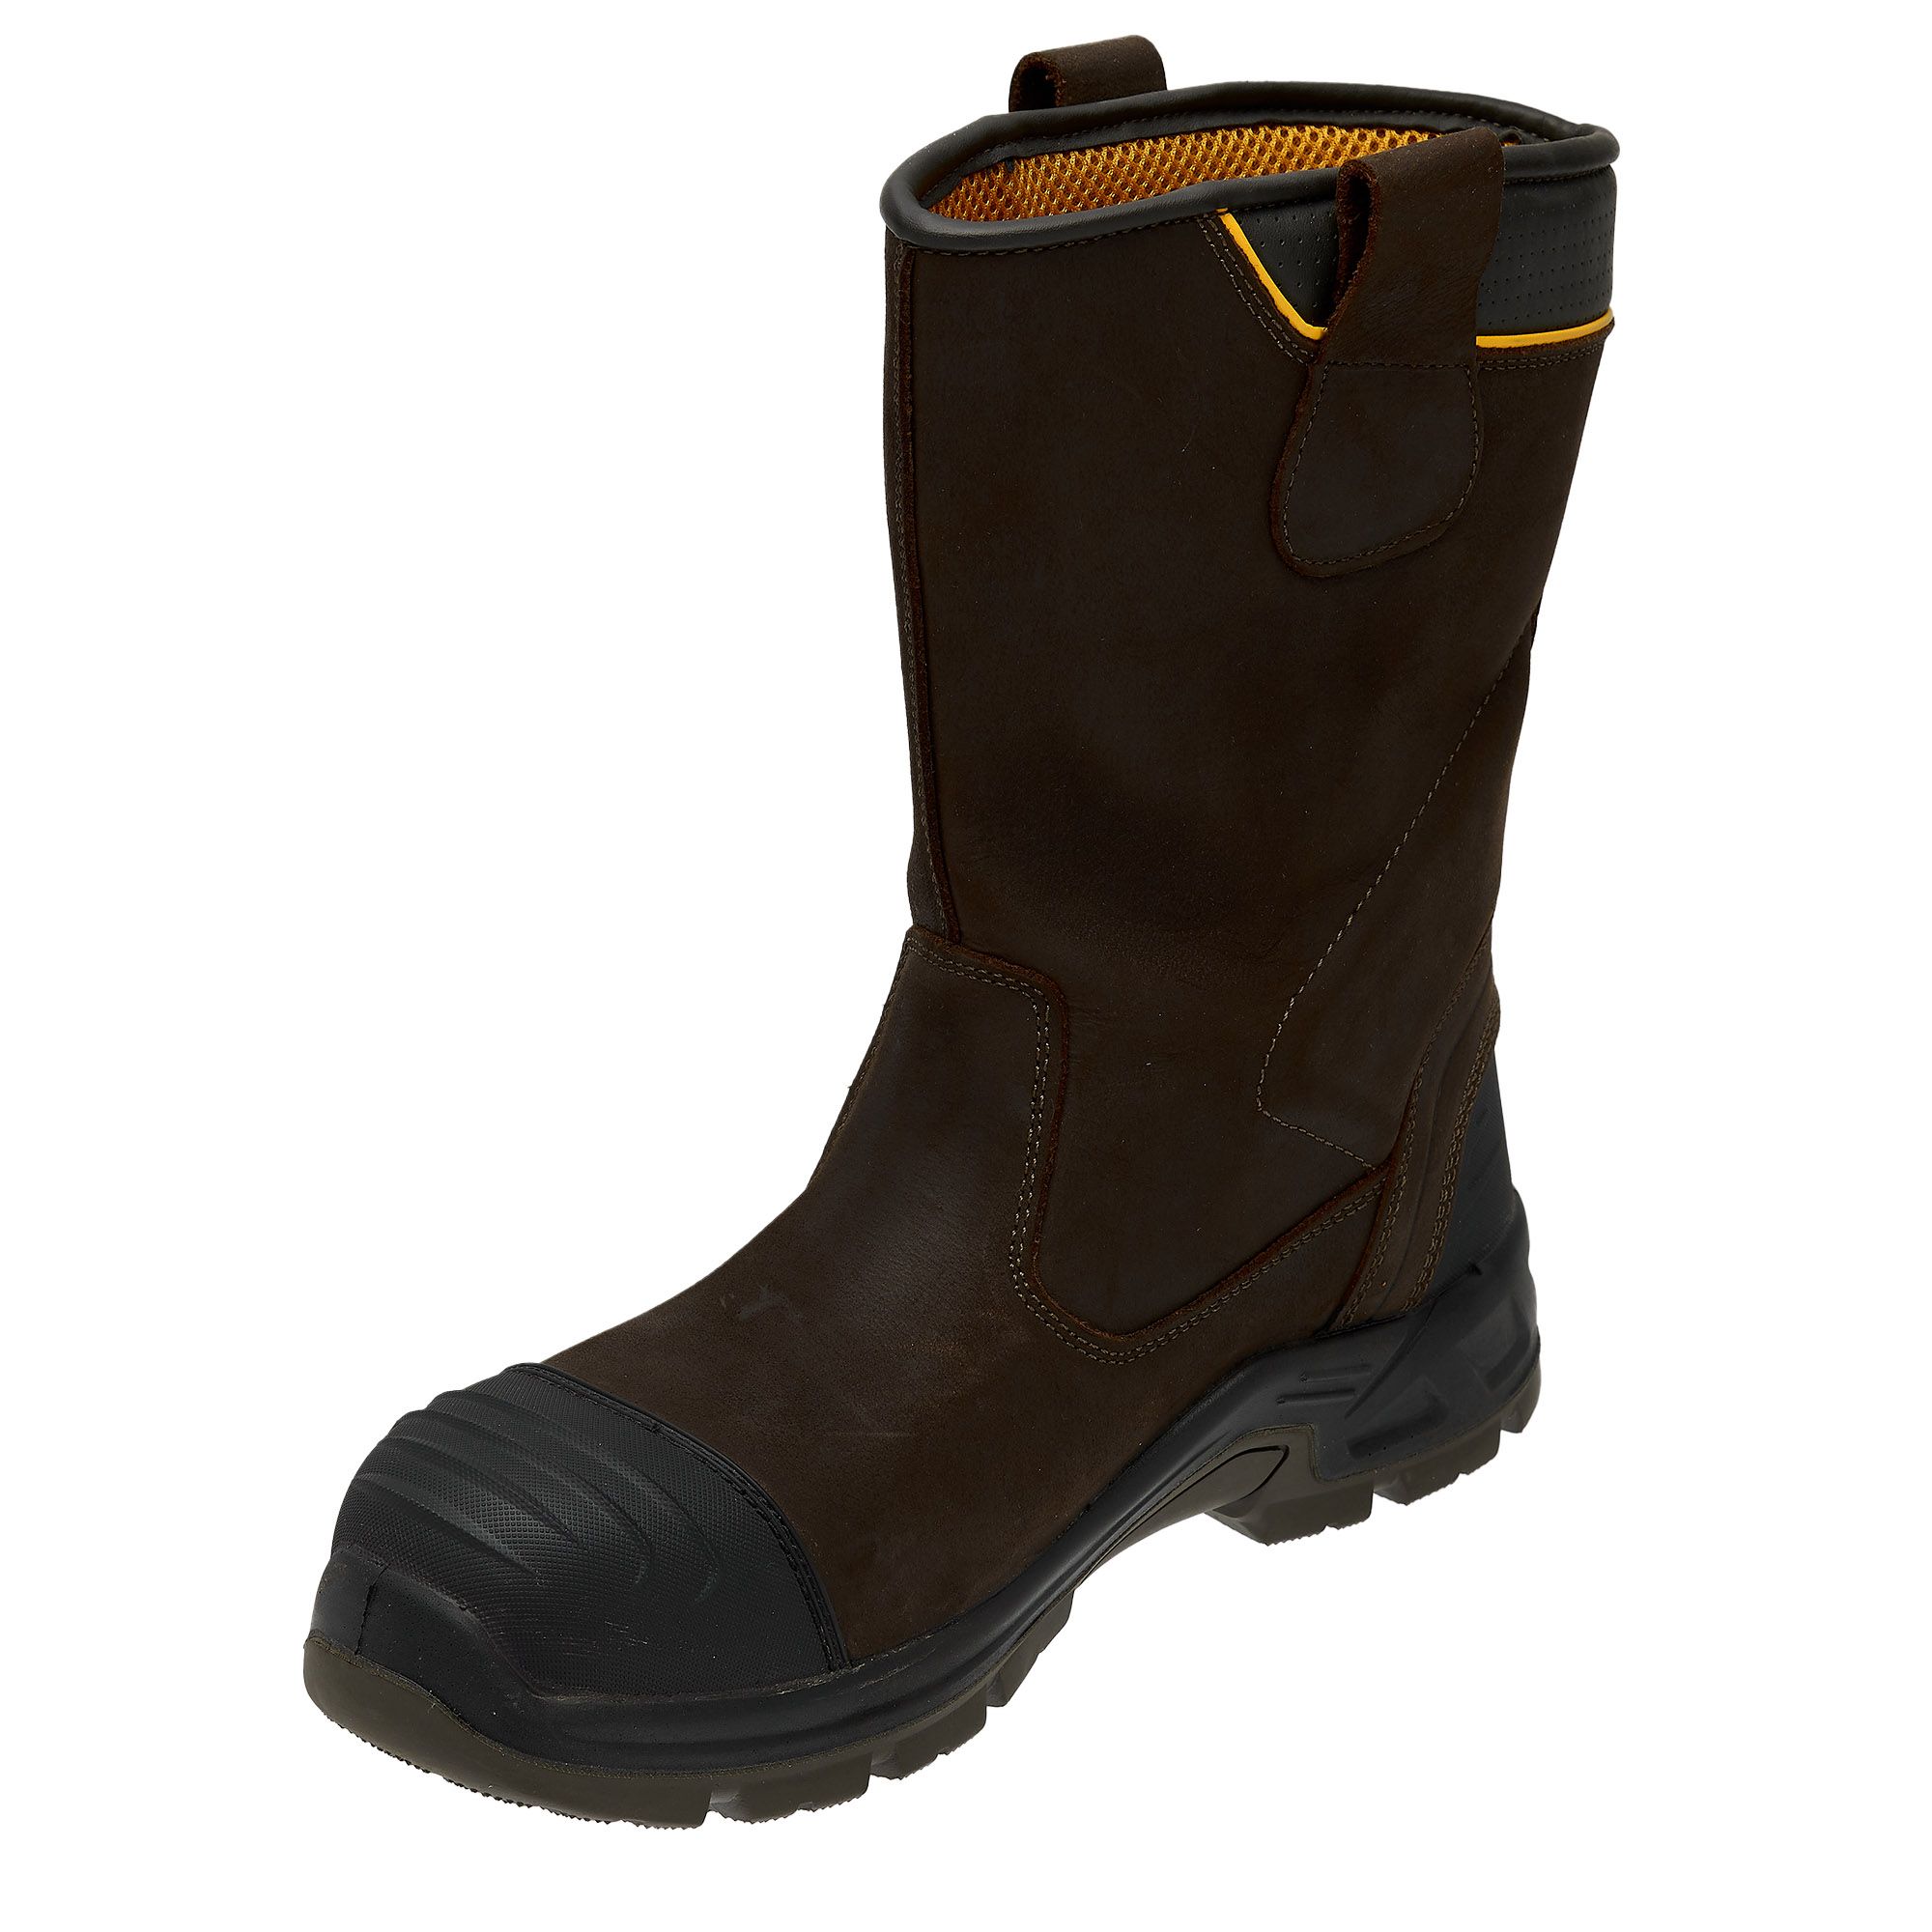 DeWalt Millington Brown Safety rigger boots, Size 11 | DIY at B&Q